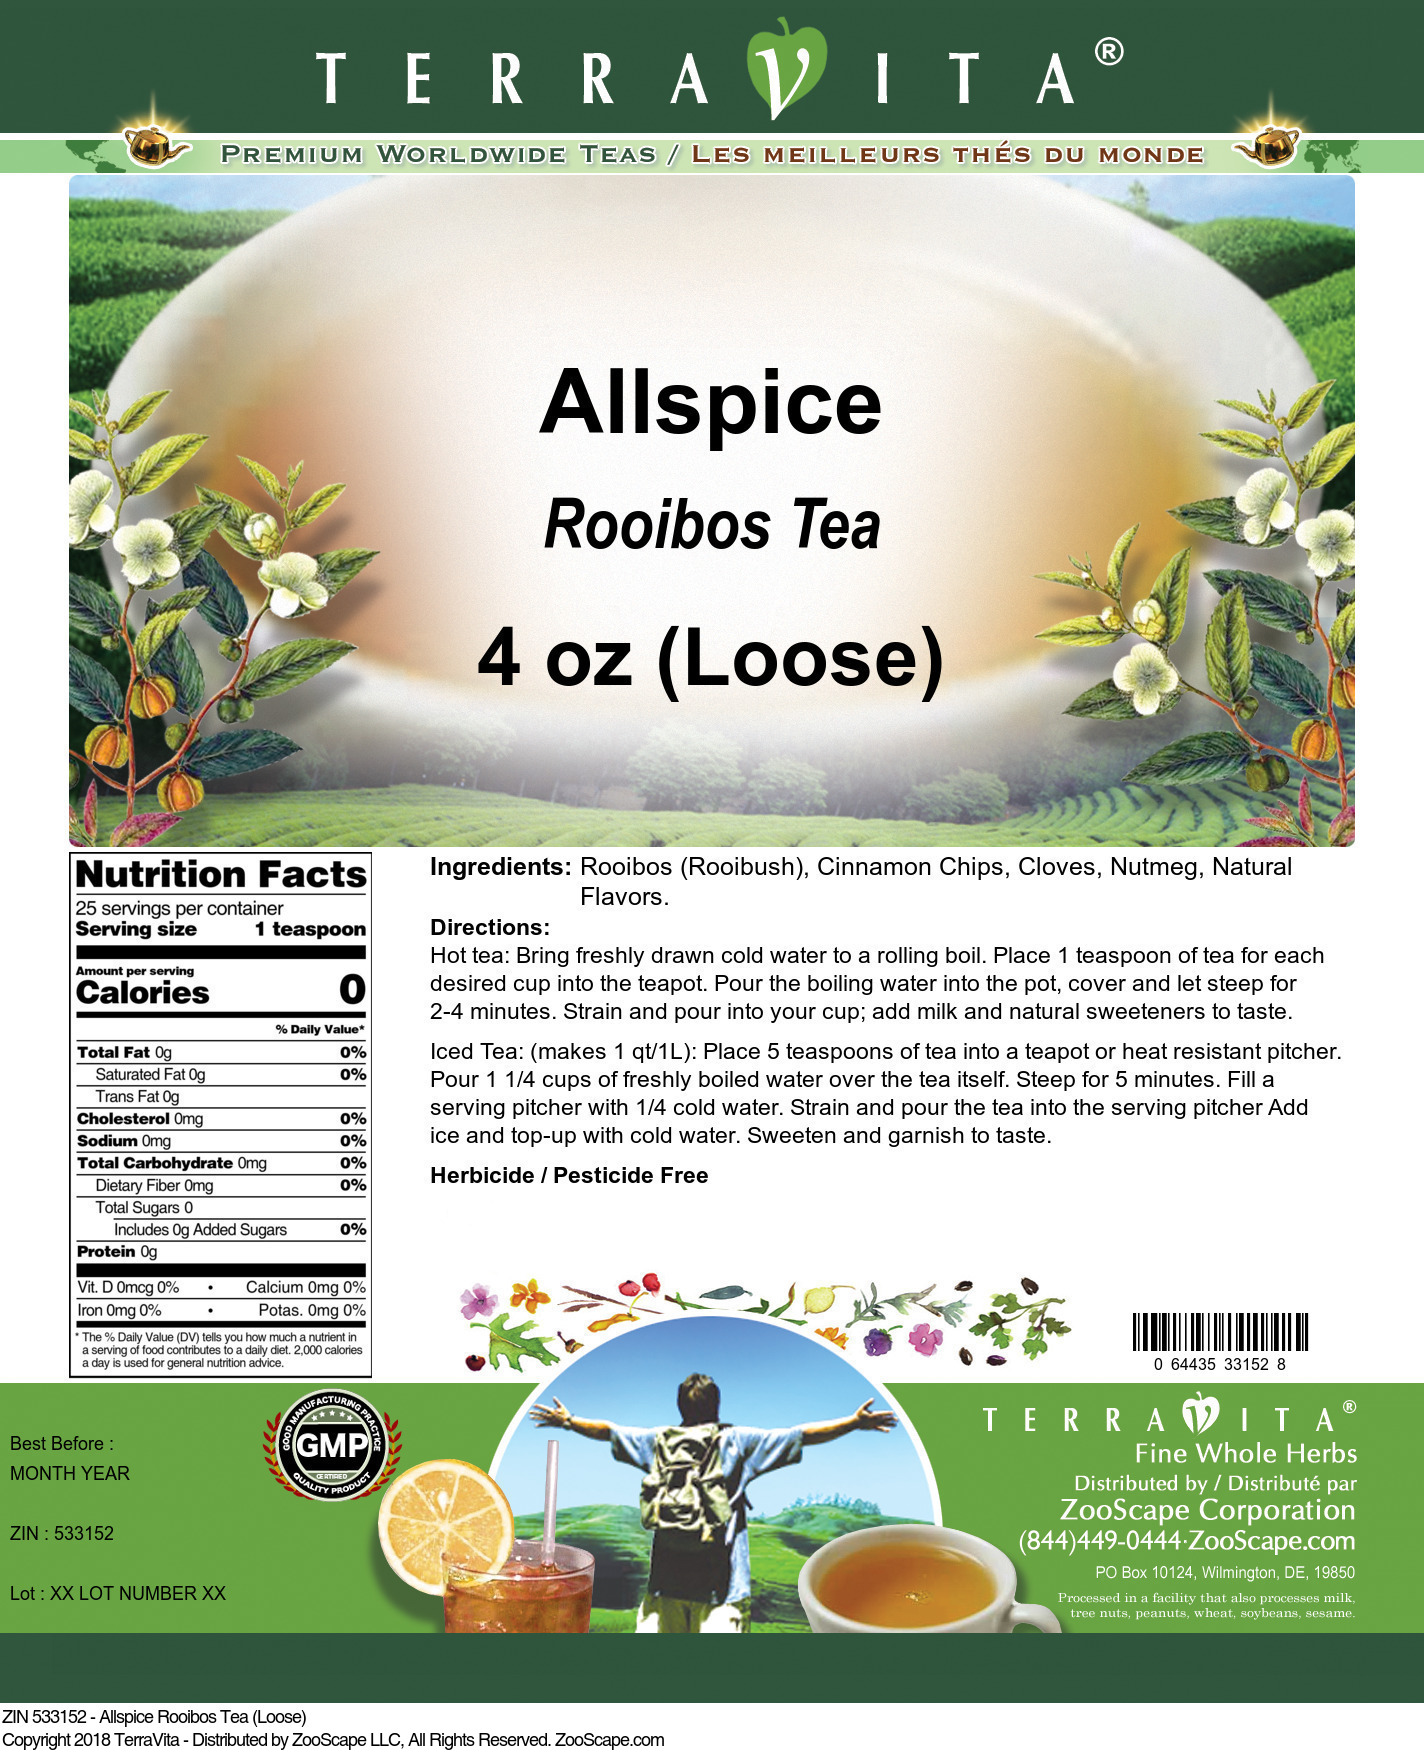 Allspice Rooibos Tea (Loose) - Label